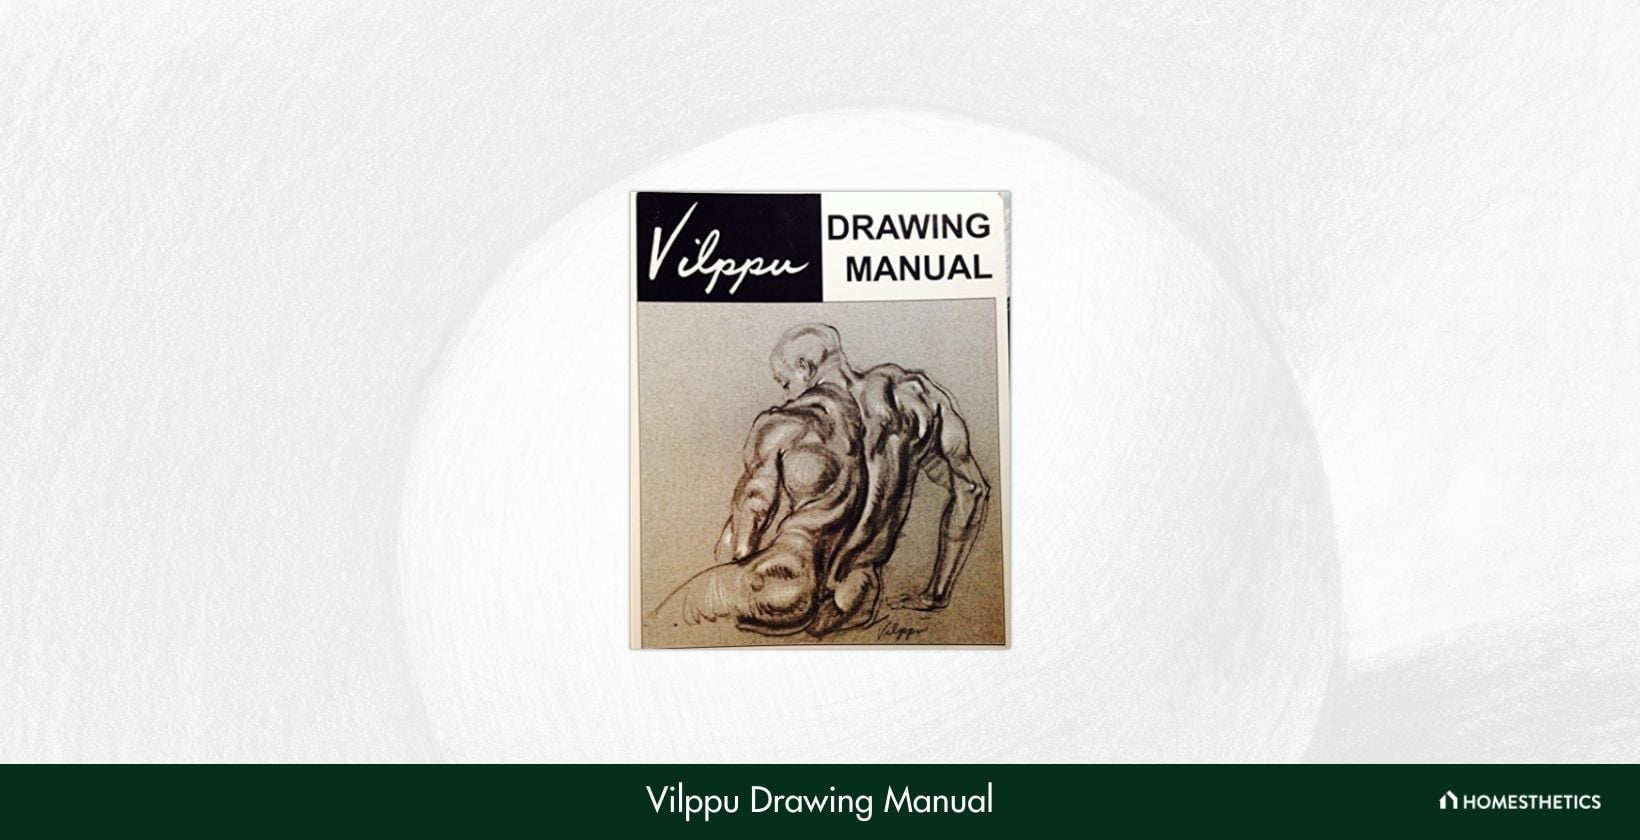 Vilppu Drawing Manual by Glenn Vilppu